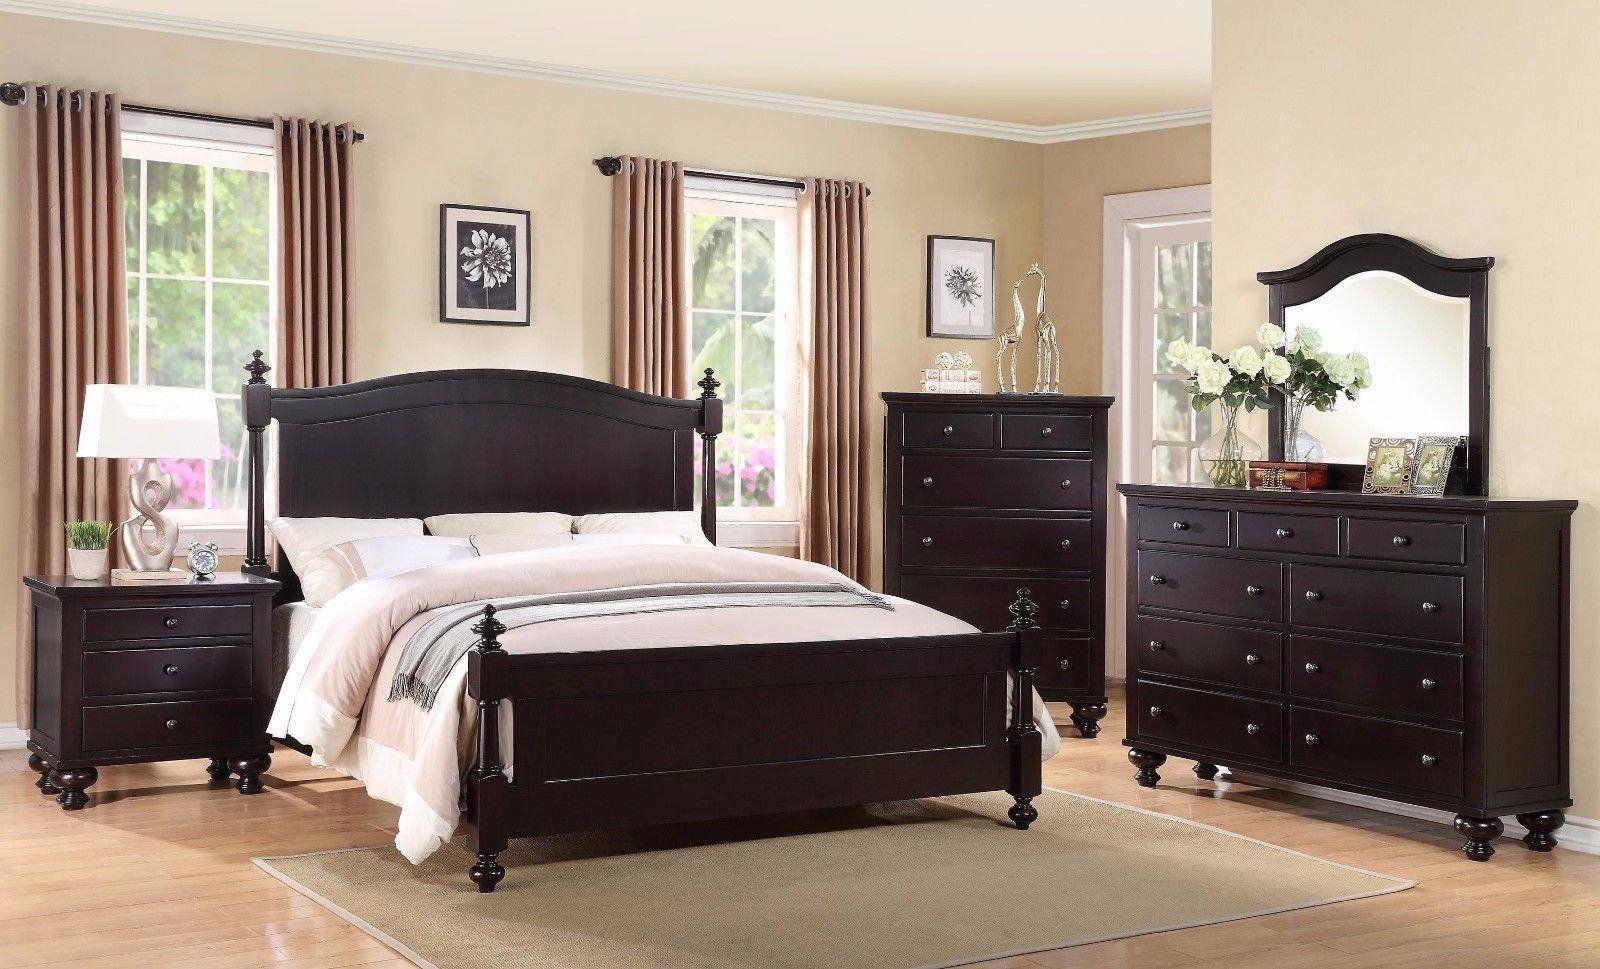 All Black Bedroom Set Inspirational Crown Mark B1350 sommer Traditional Black Espresso King Size Bedroom Set 3 Pcs